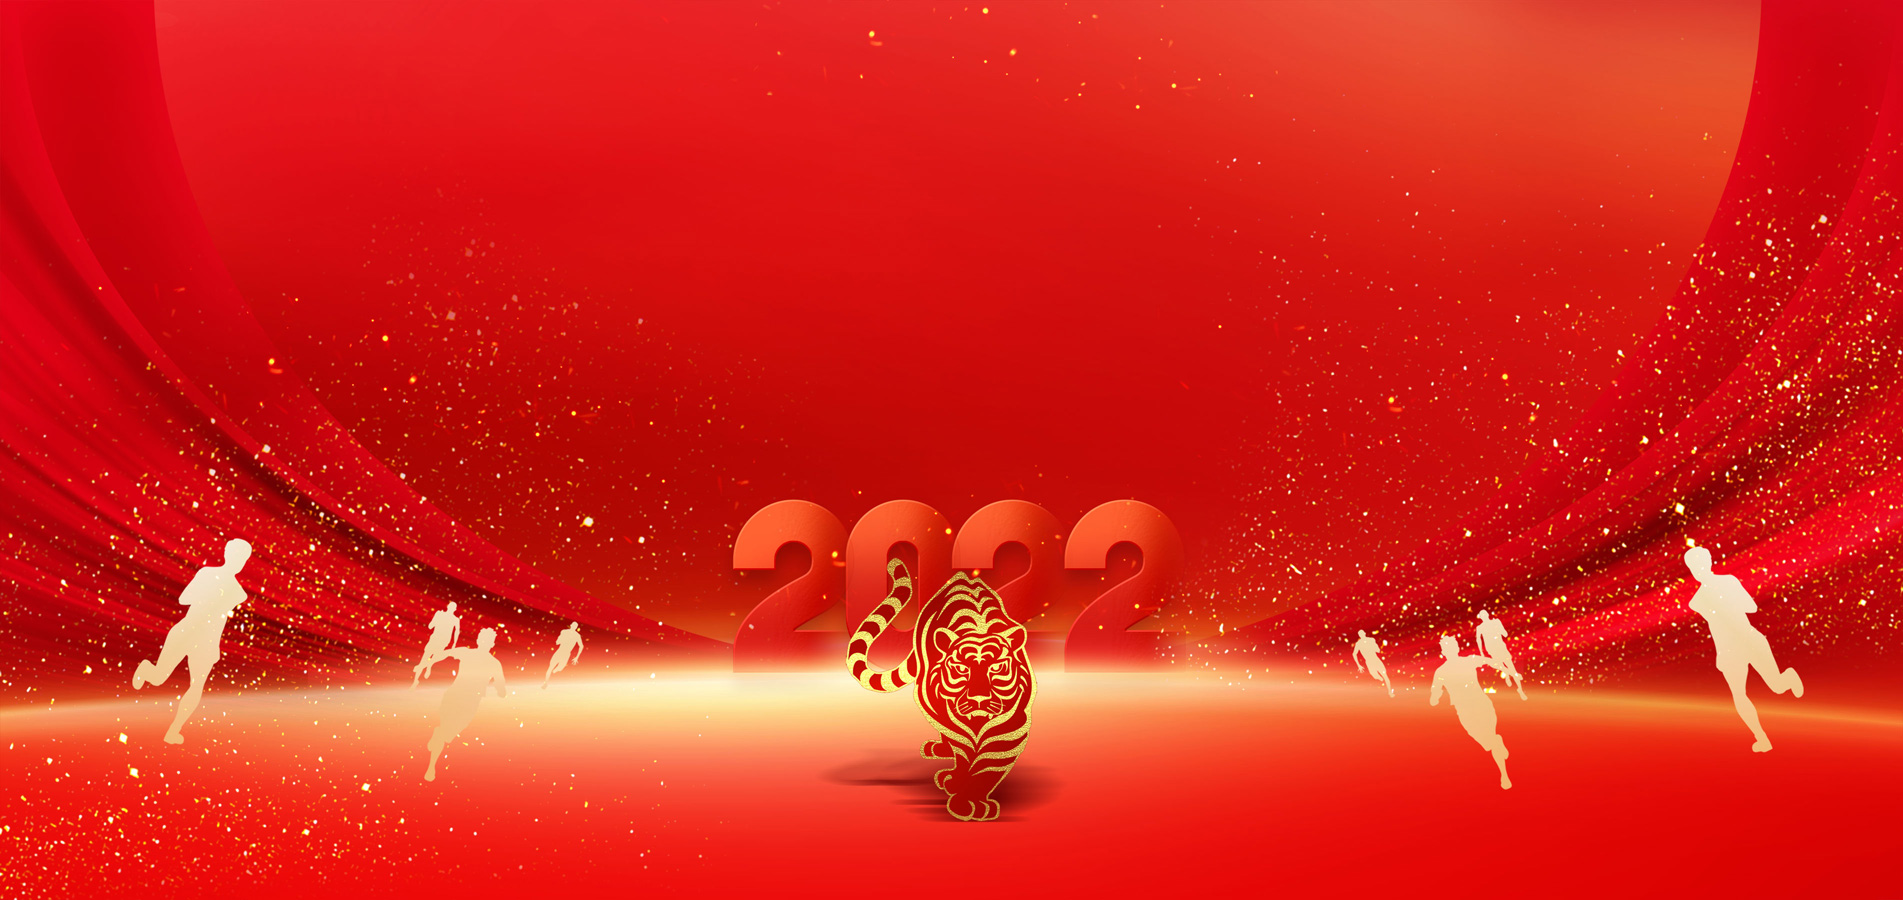 河南鑫lovebet体育娱乐lovebet唯一官网科技股份有限公司祝大家新年快乐